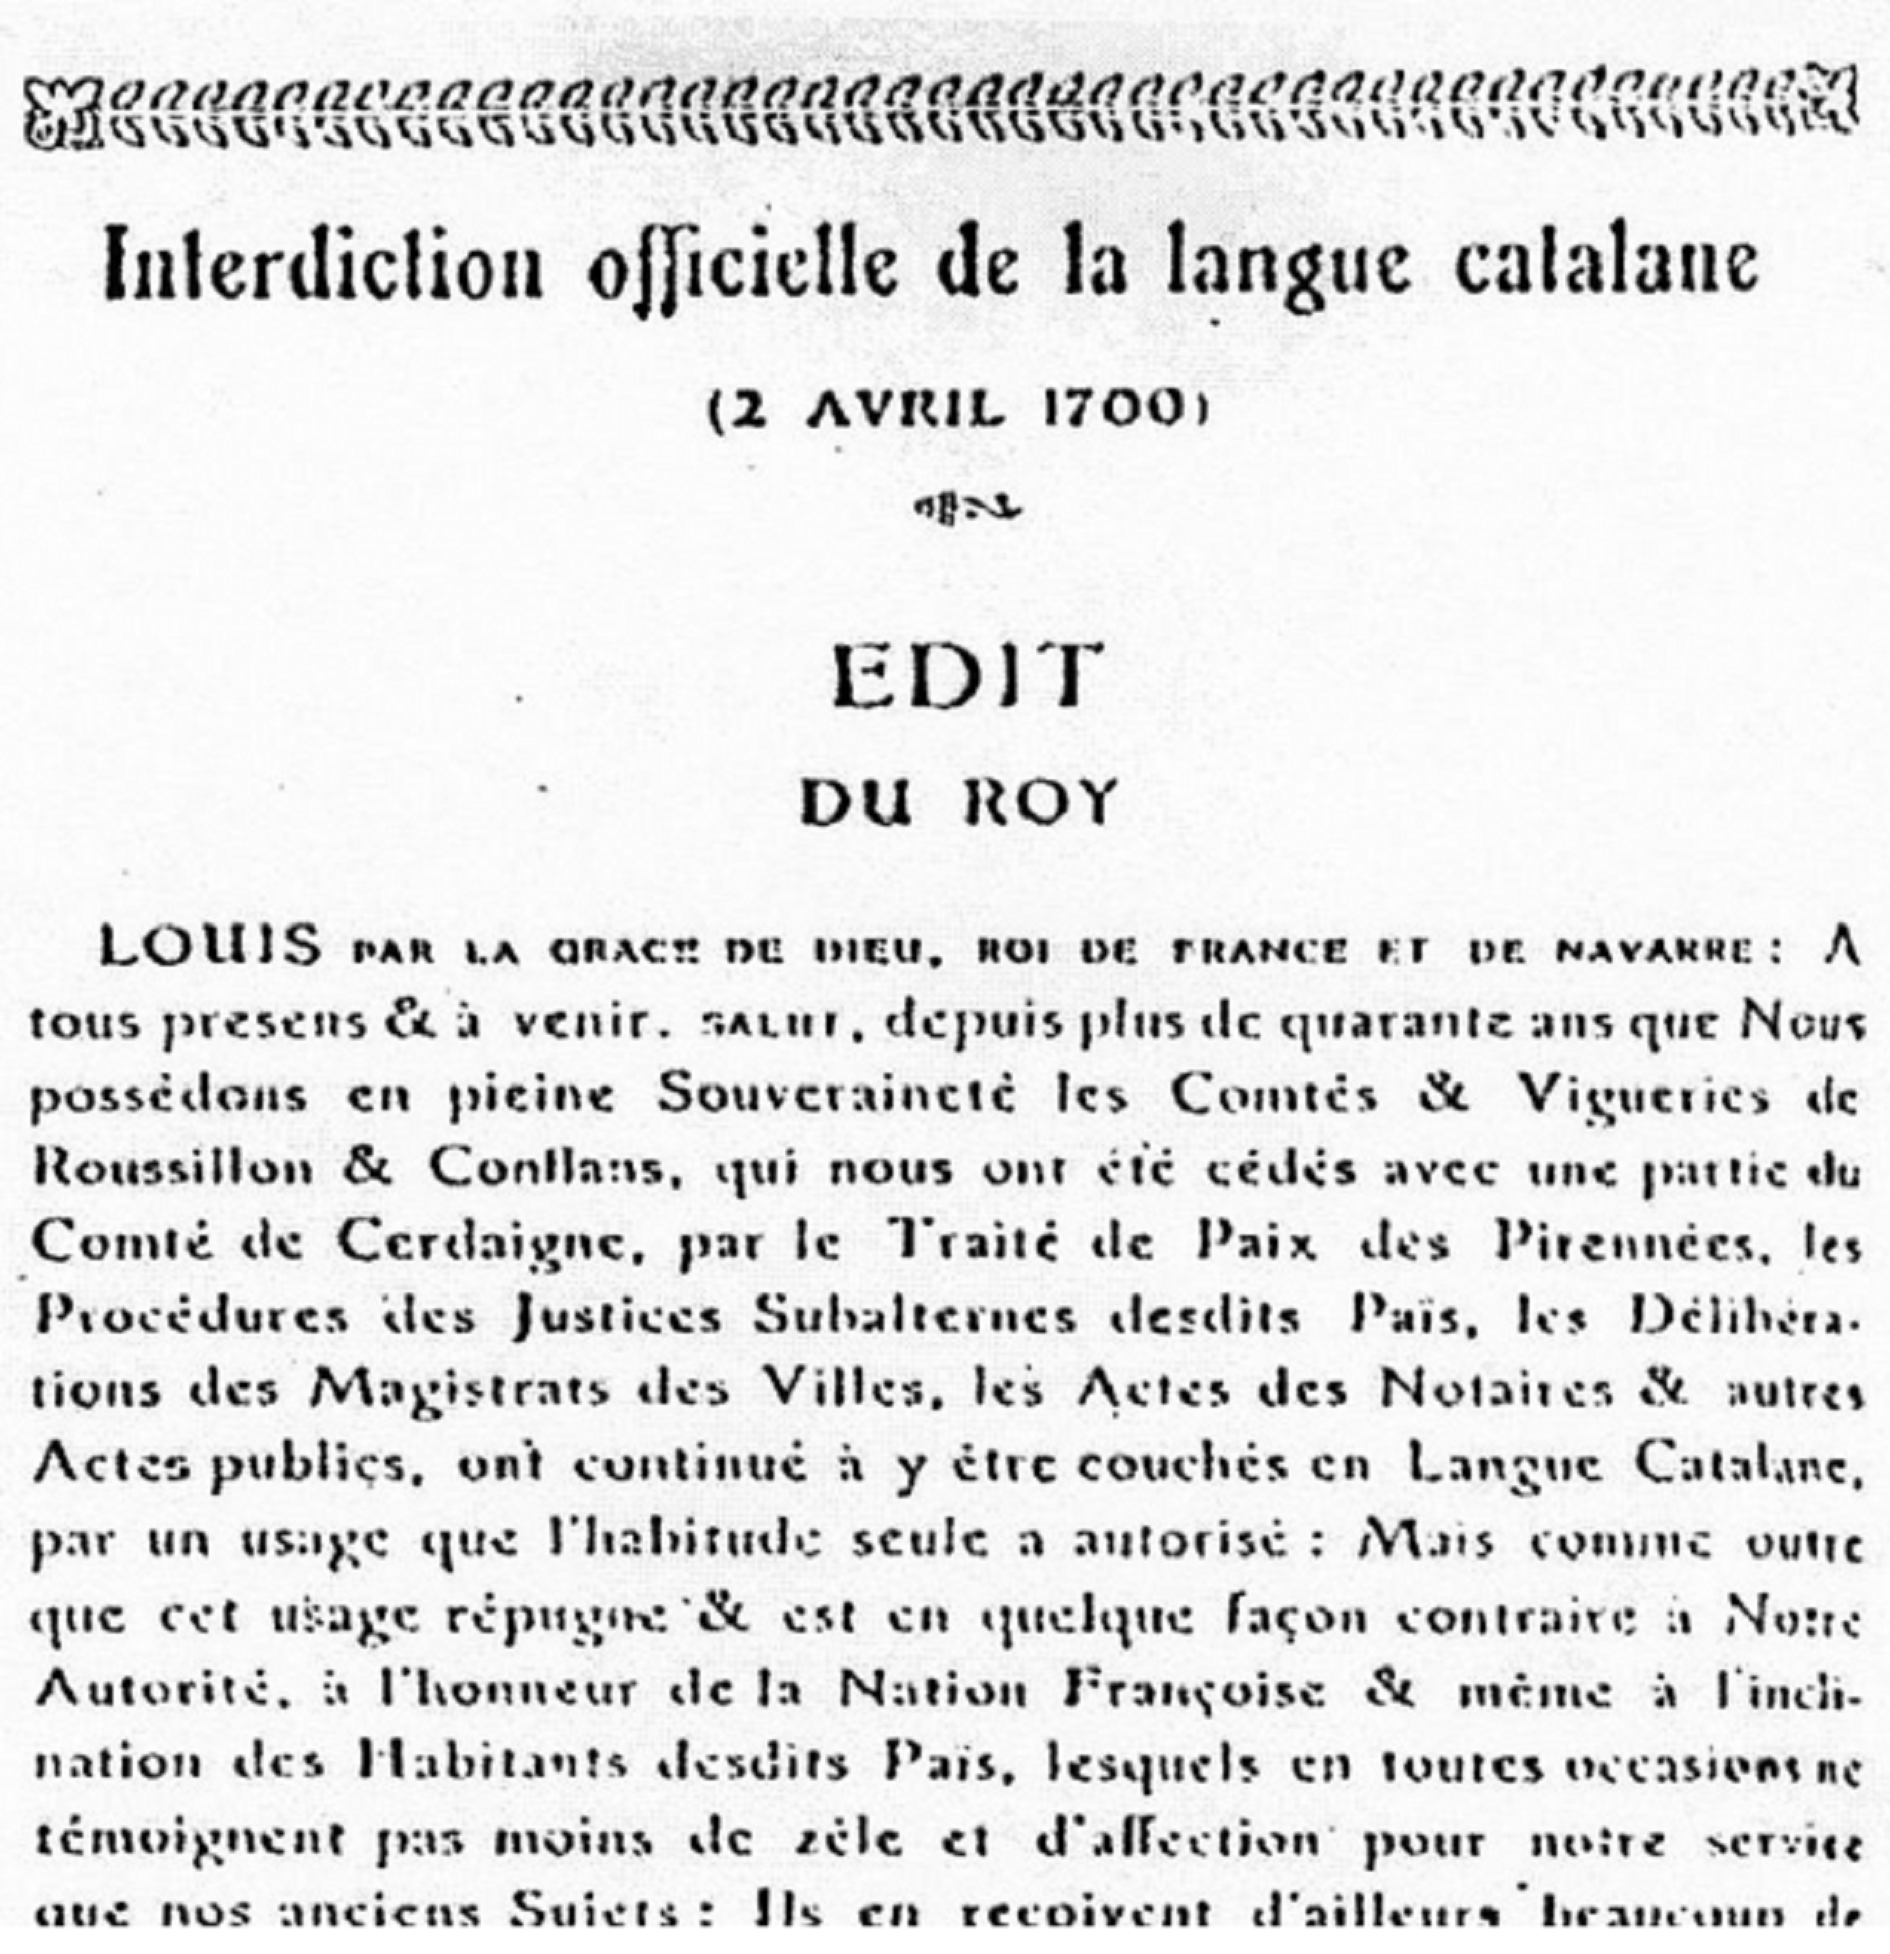 Muere Luis XIV, el rey que proclamó que el catalán era repugnante